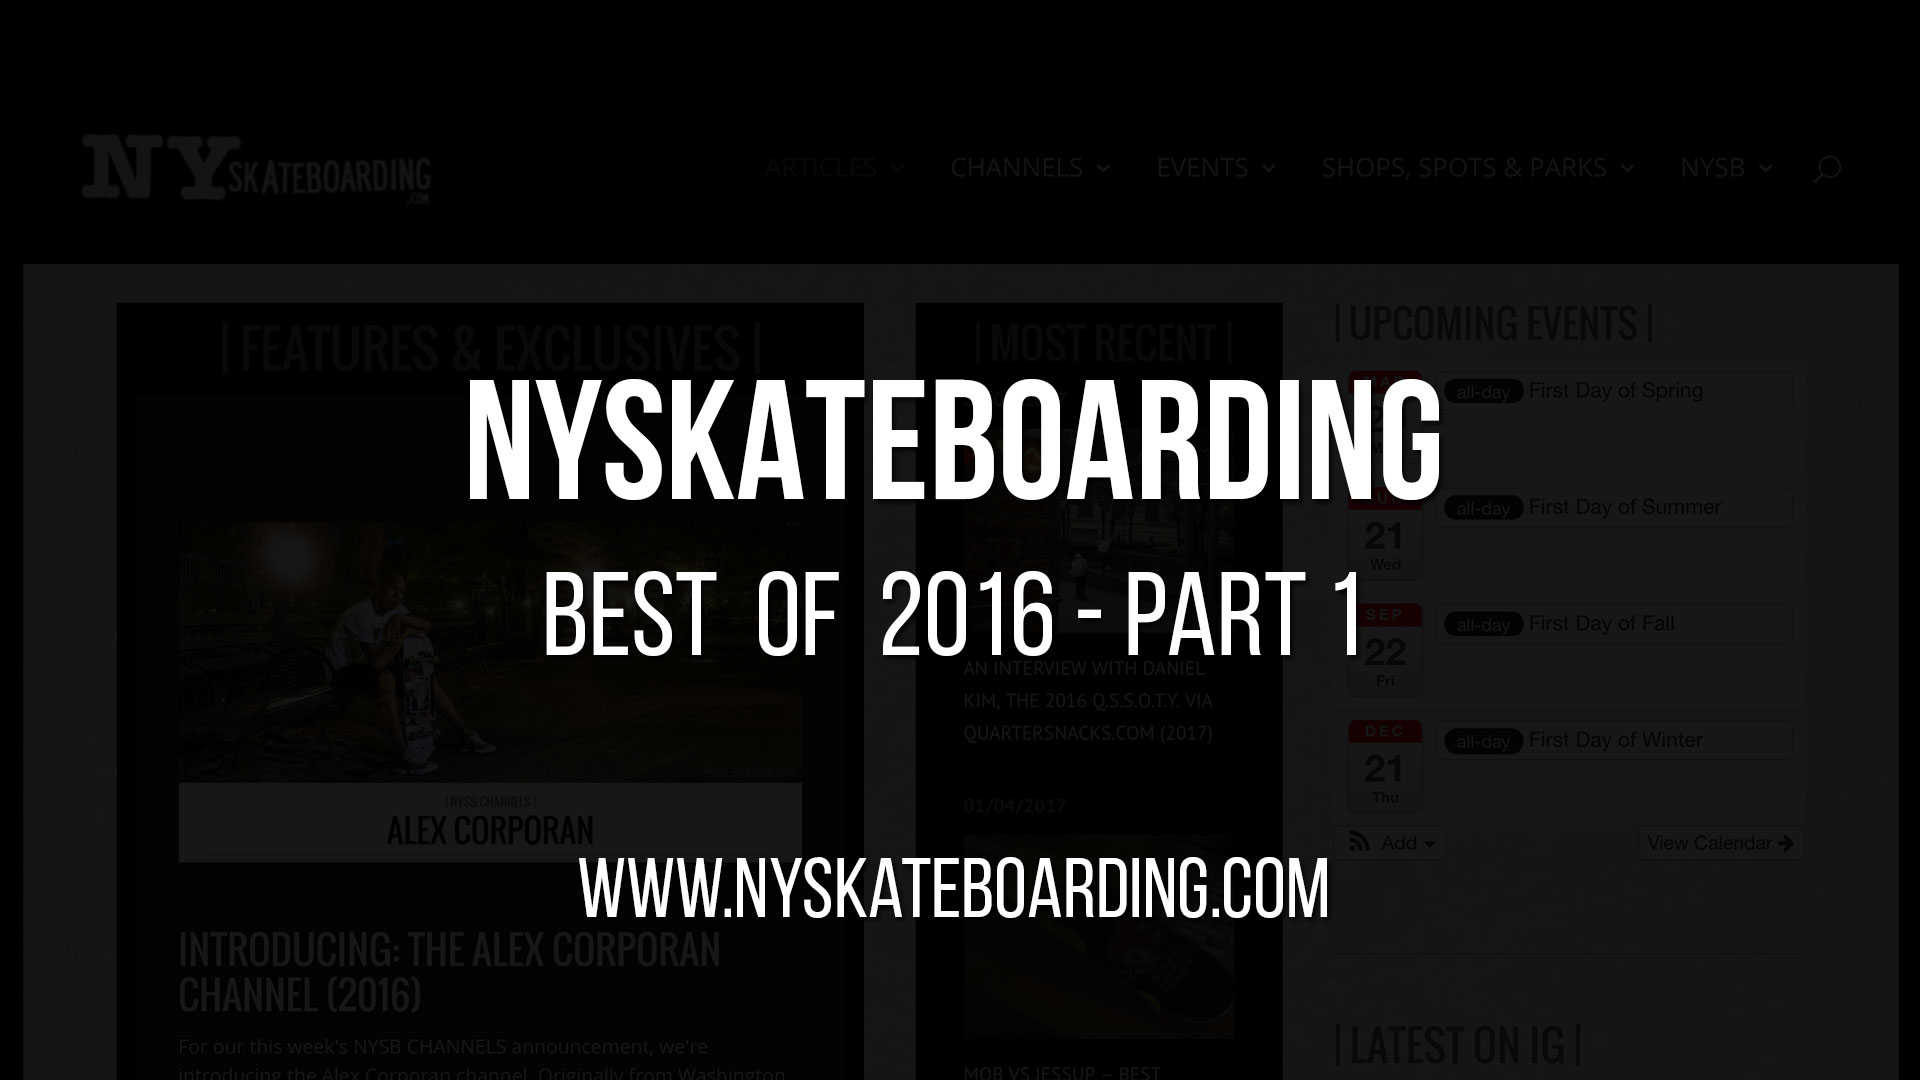 NYSkateboarding’s Best of 2016 – Part 1